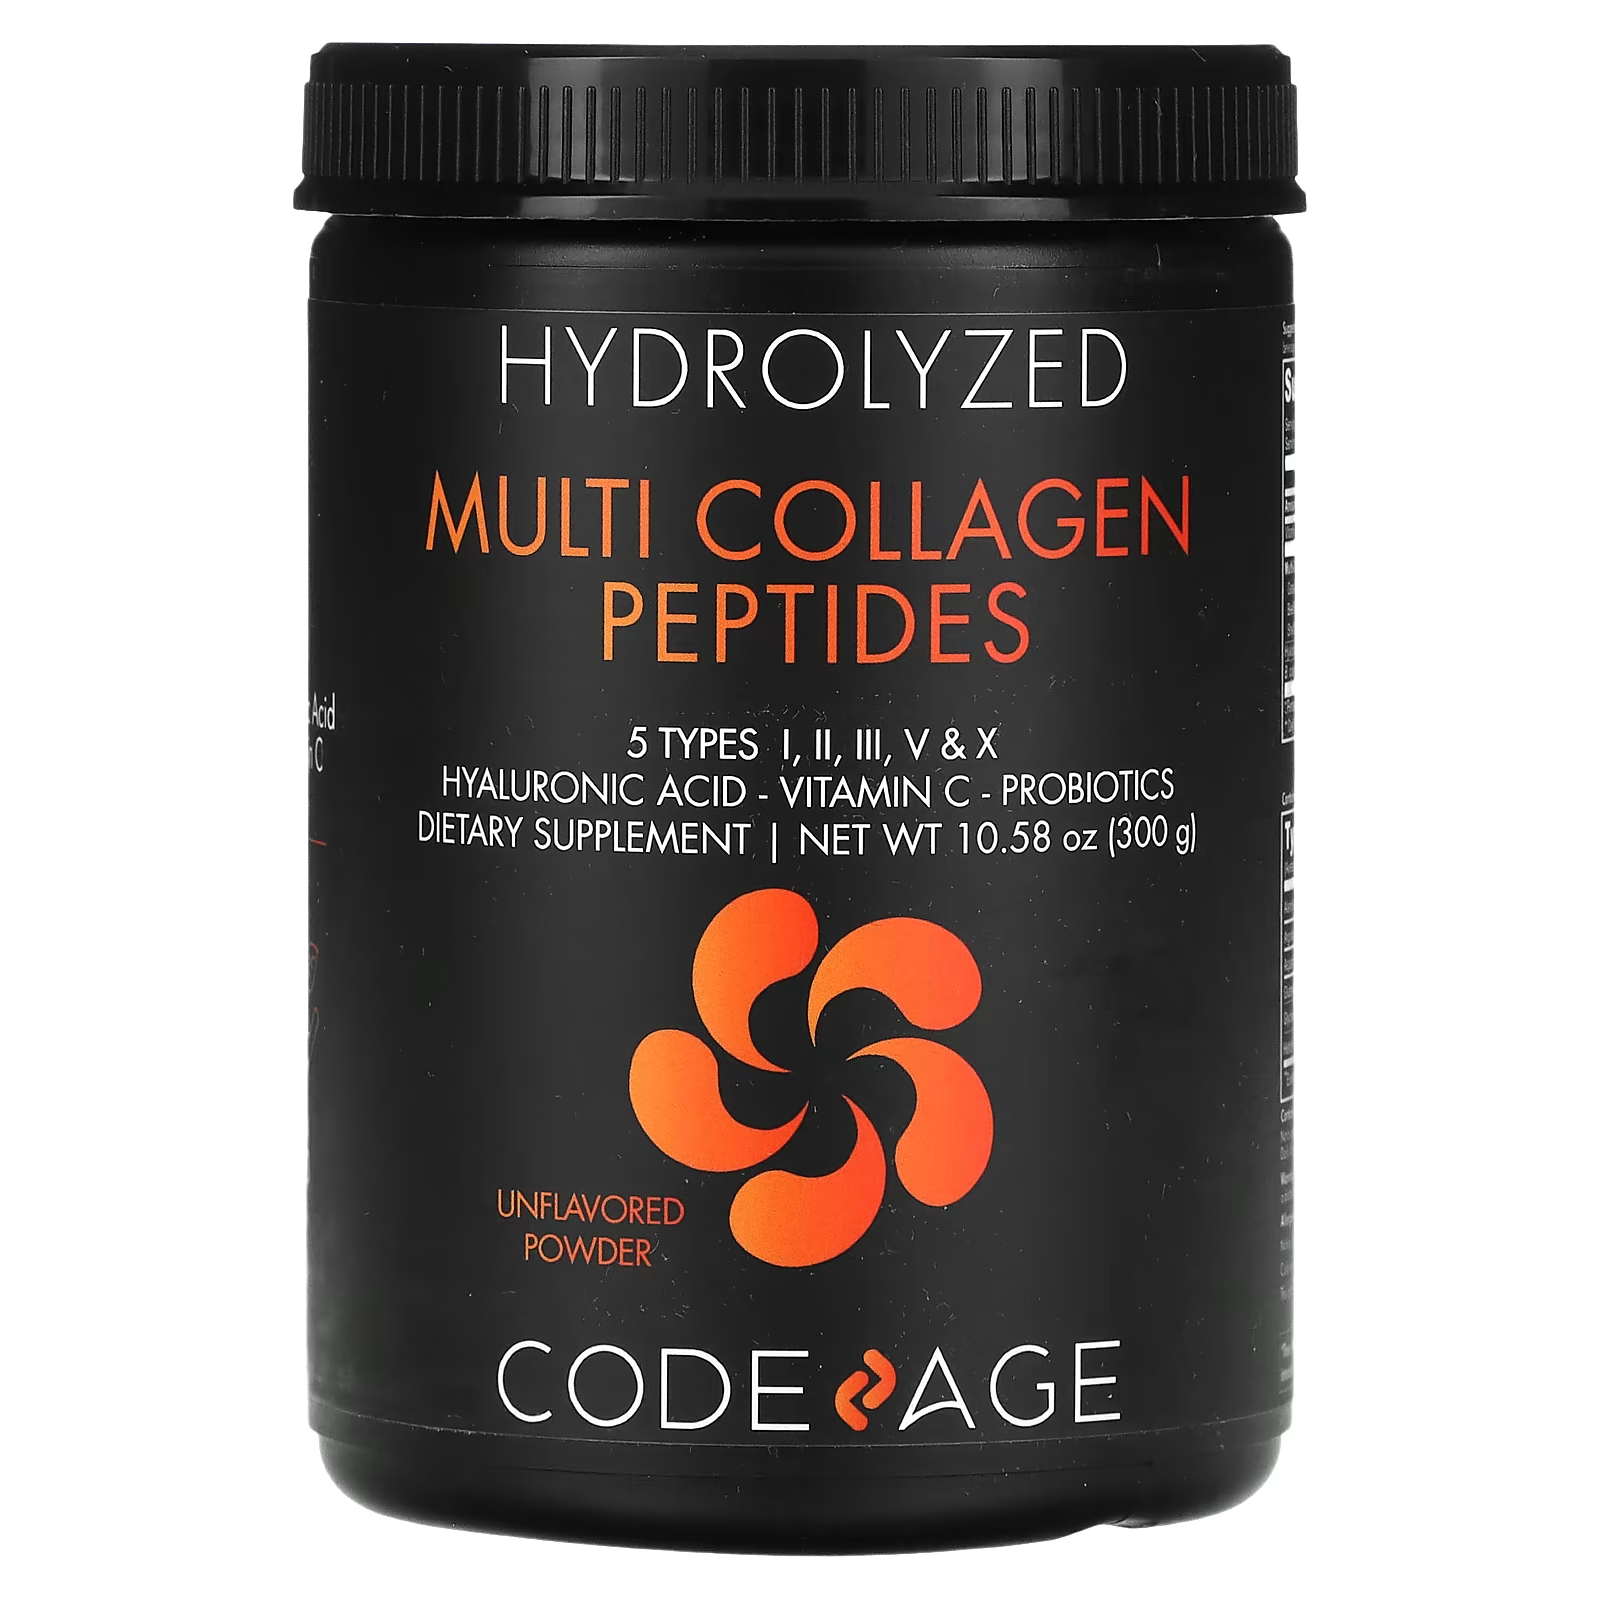 Пищевая добавка Codeage Гидролизованные мультиколлагеновые пептиды без вкуса, 300г